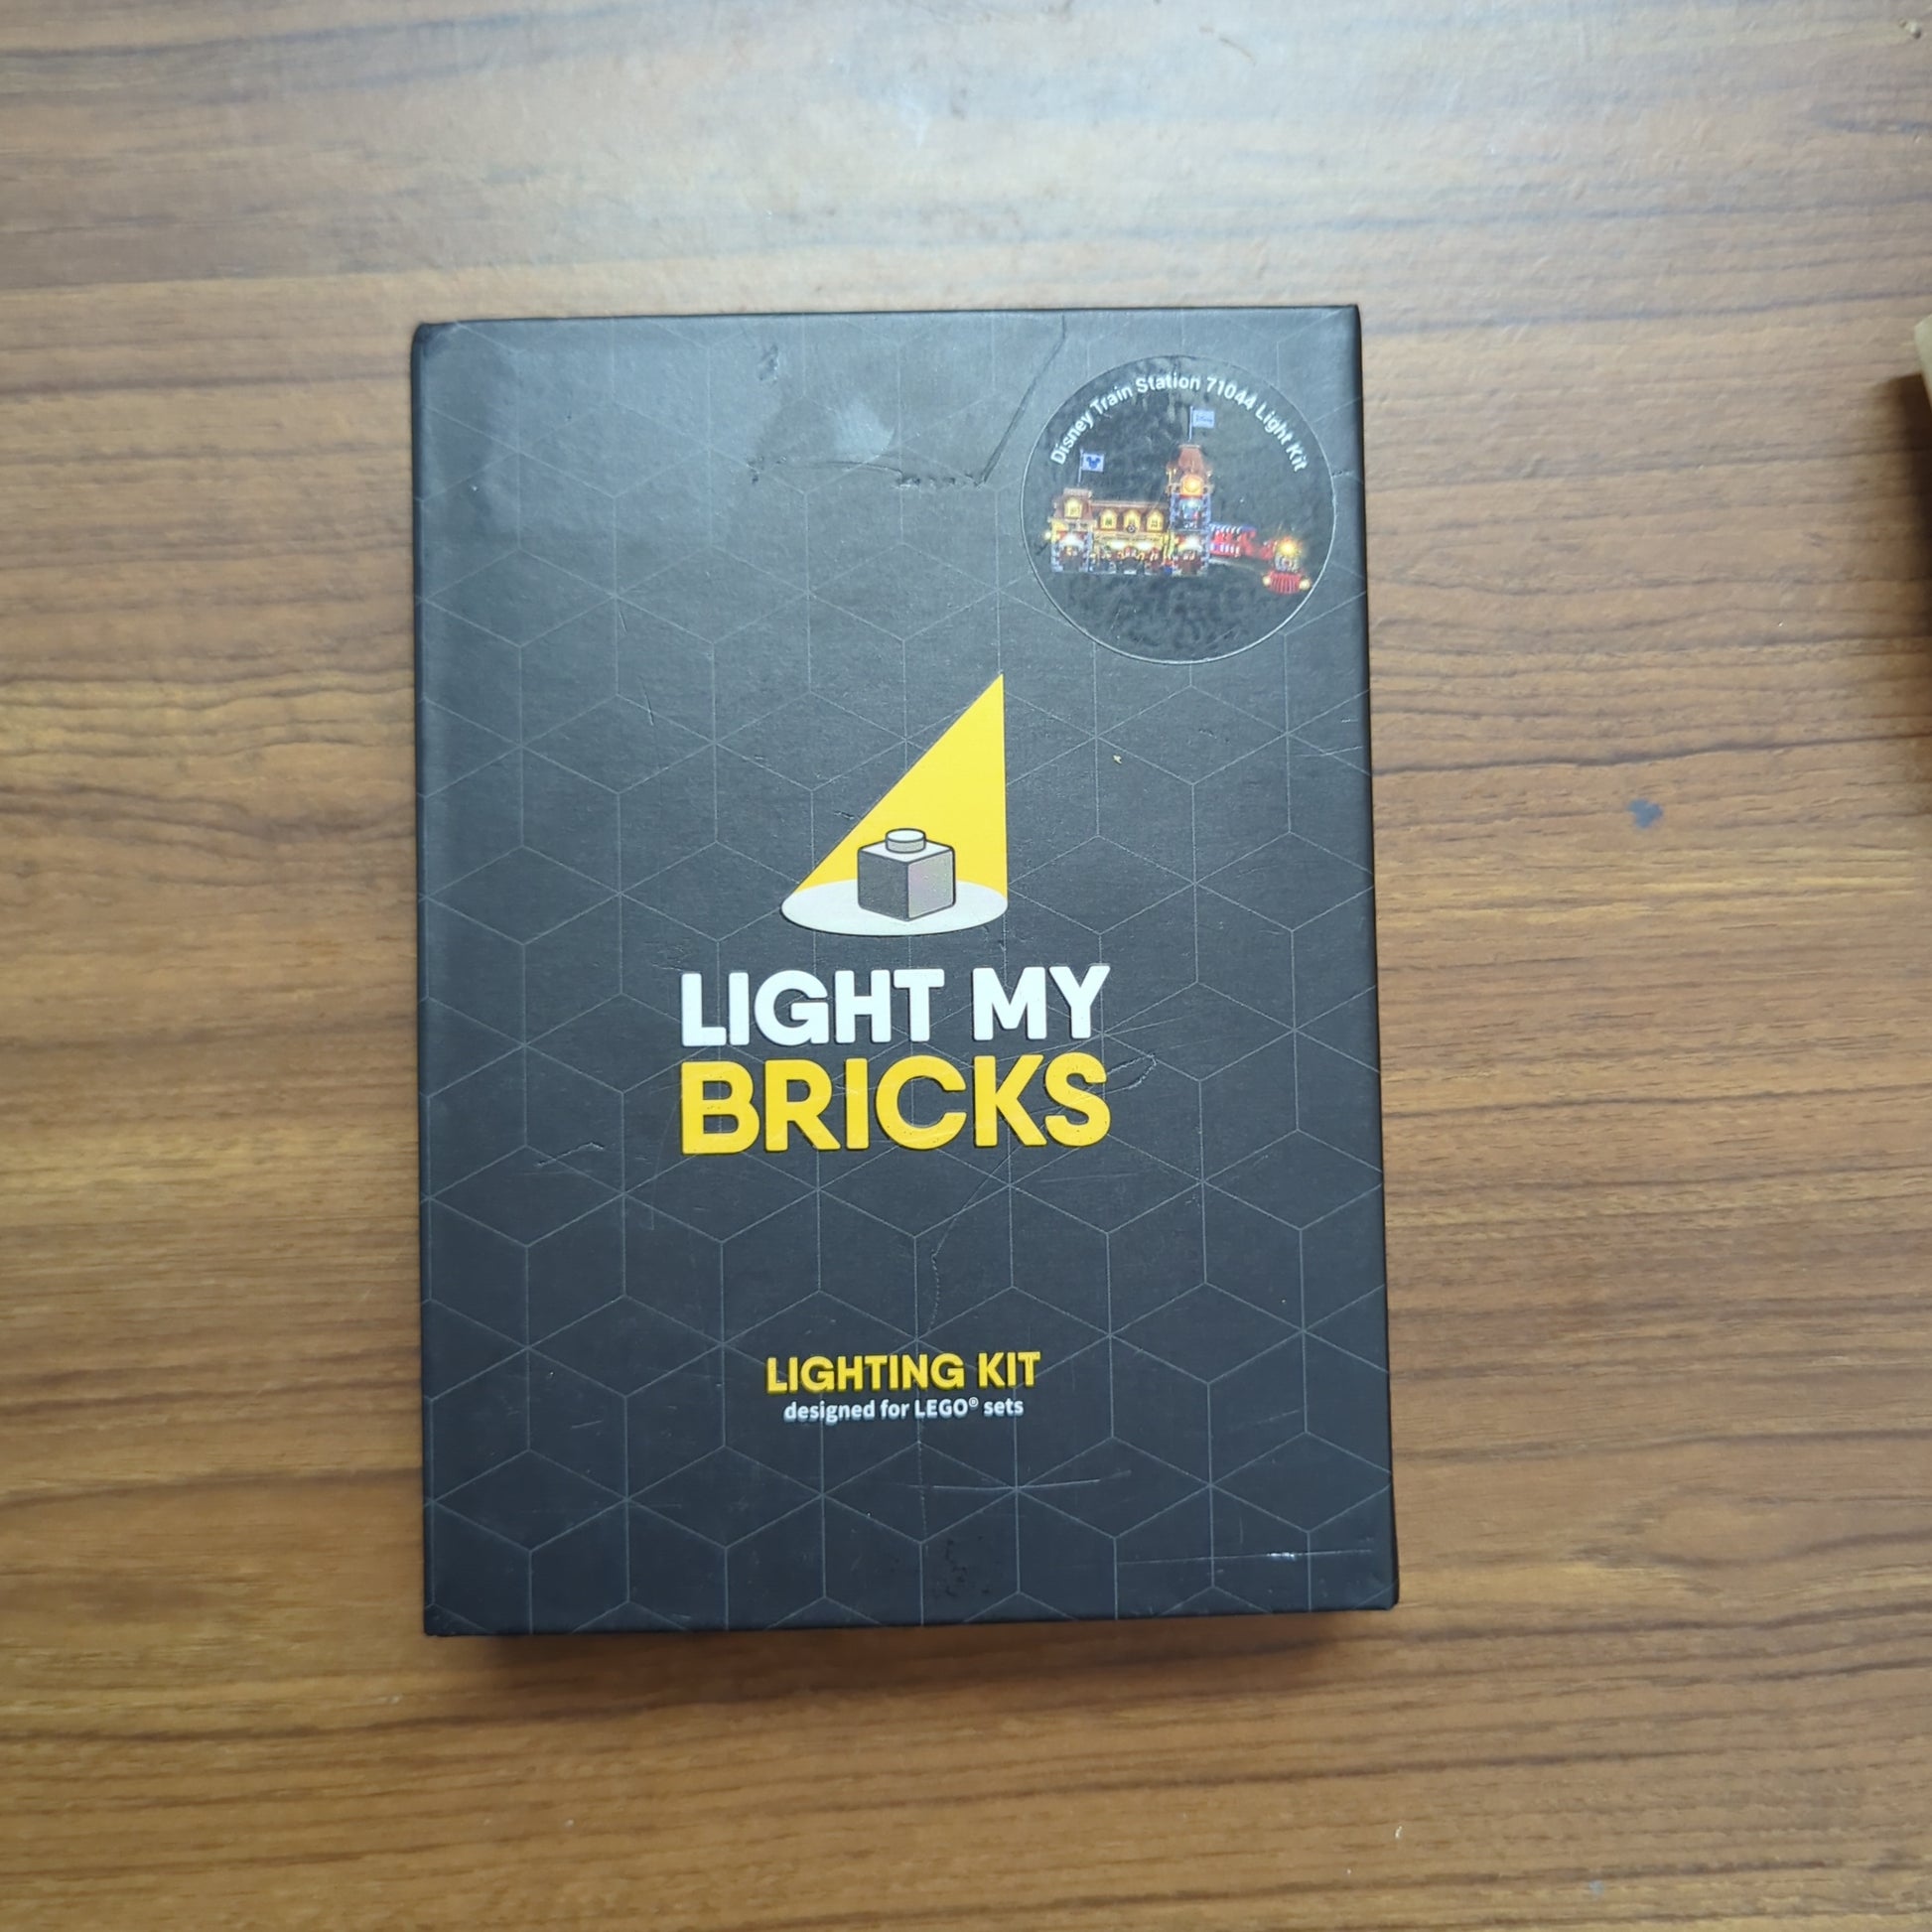 LIGHT MY BRICKS - LED Light Kit for Disney Train Station #71044 Light Kit - NEW FRENLY BRICKS - Open 7 Days